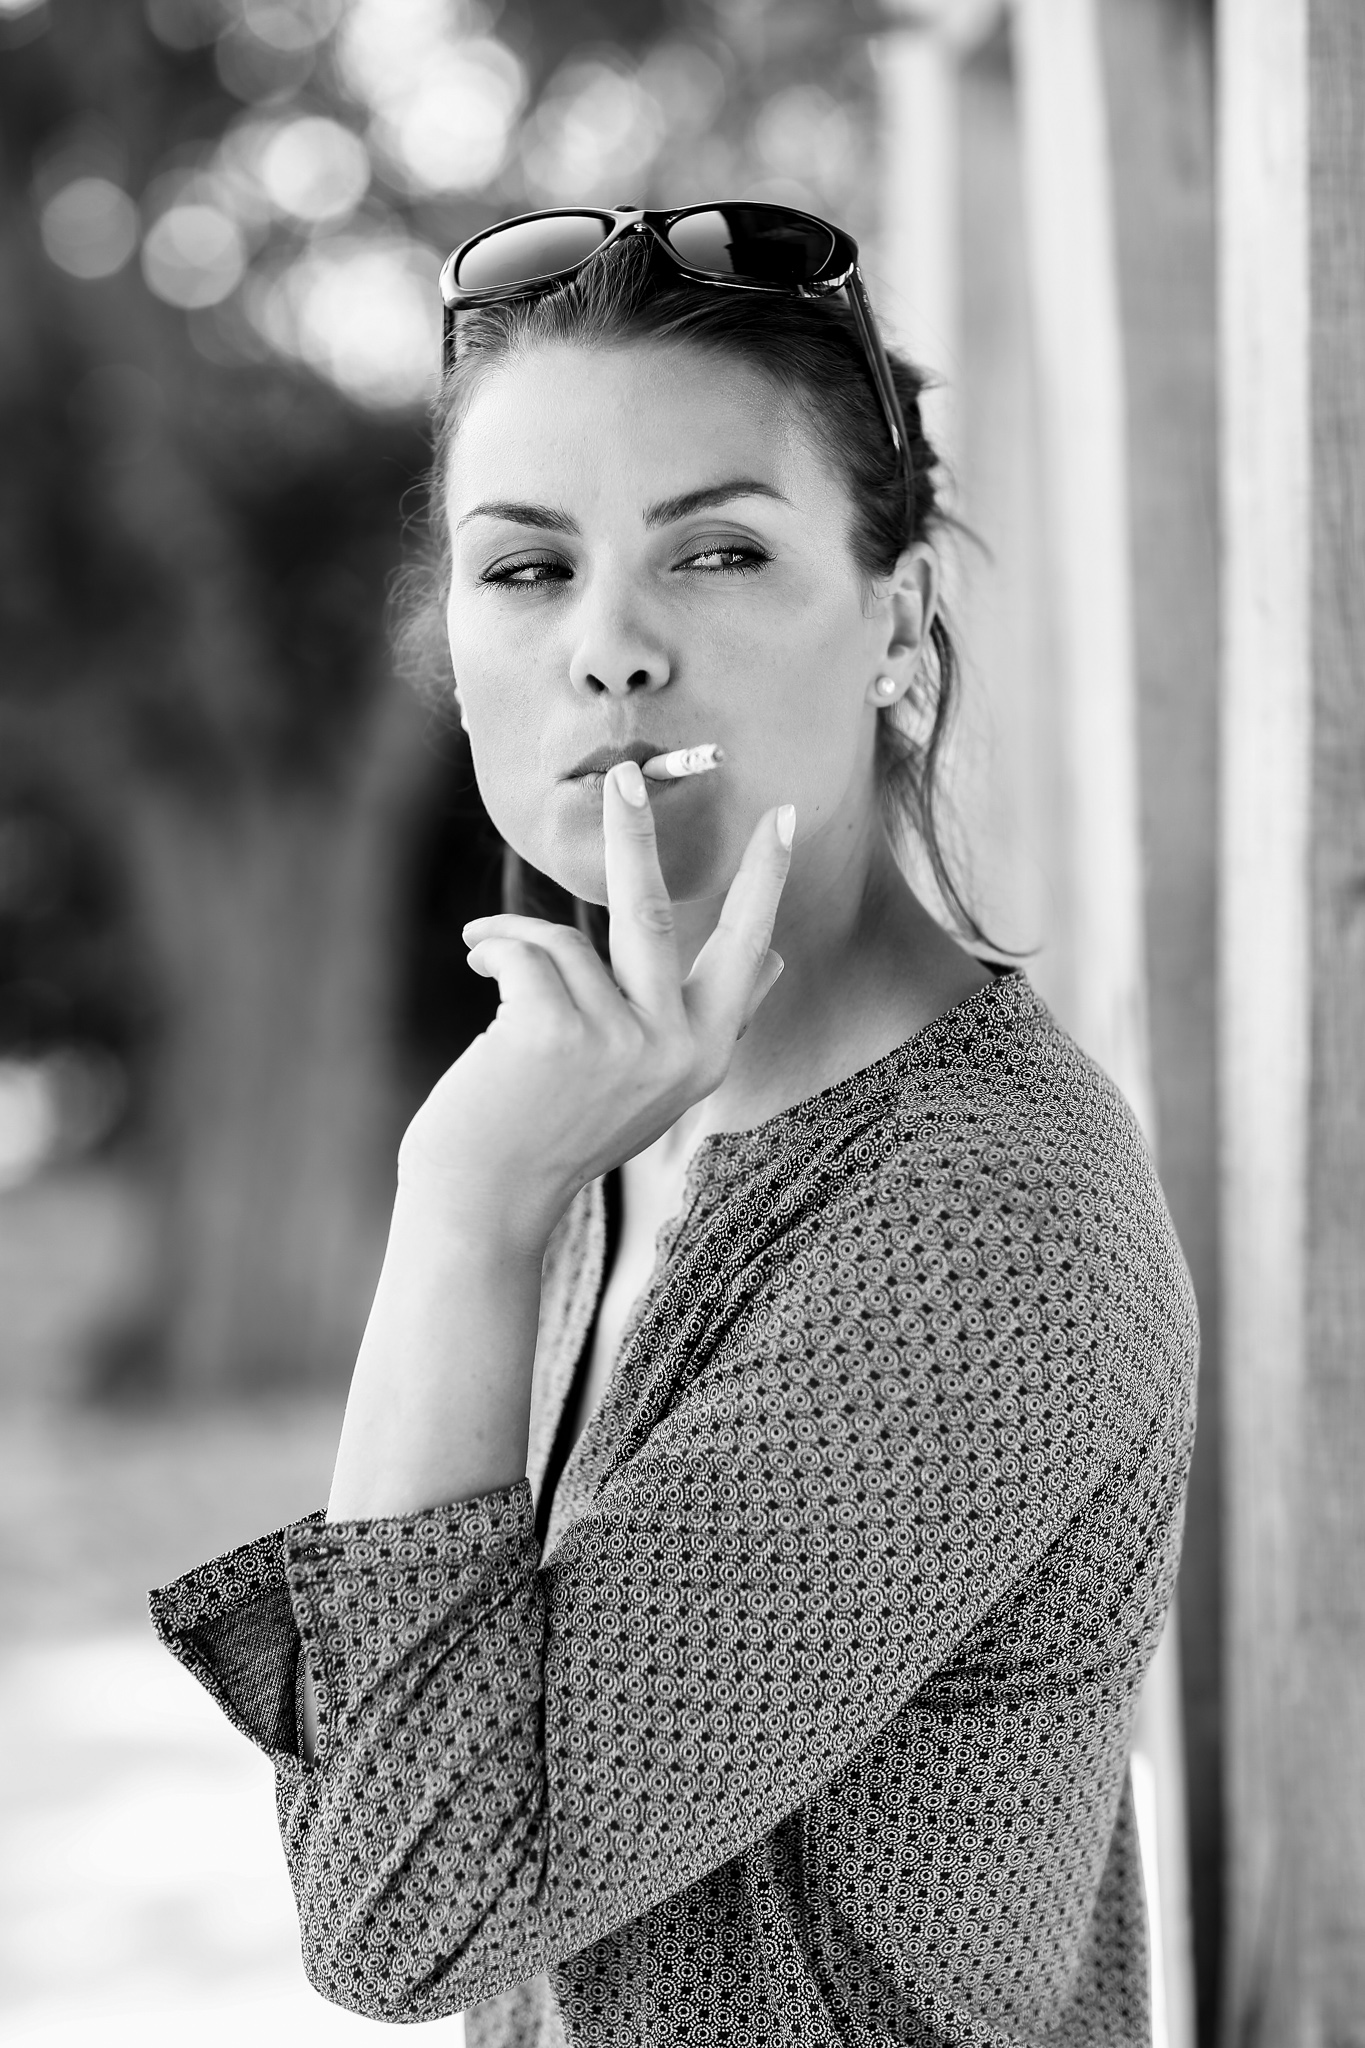 Zigarette rauchende Frau